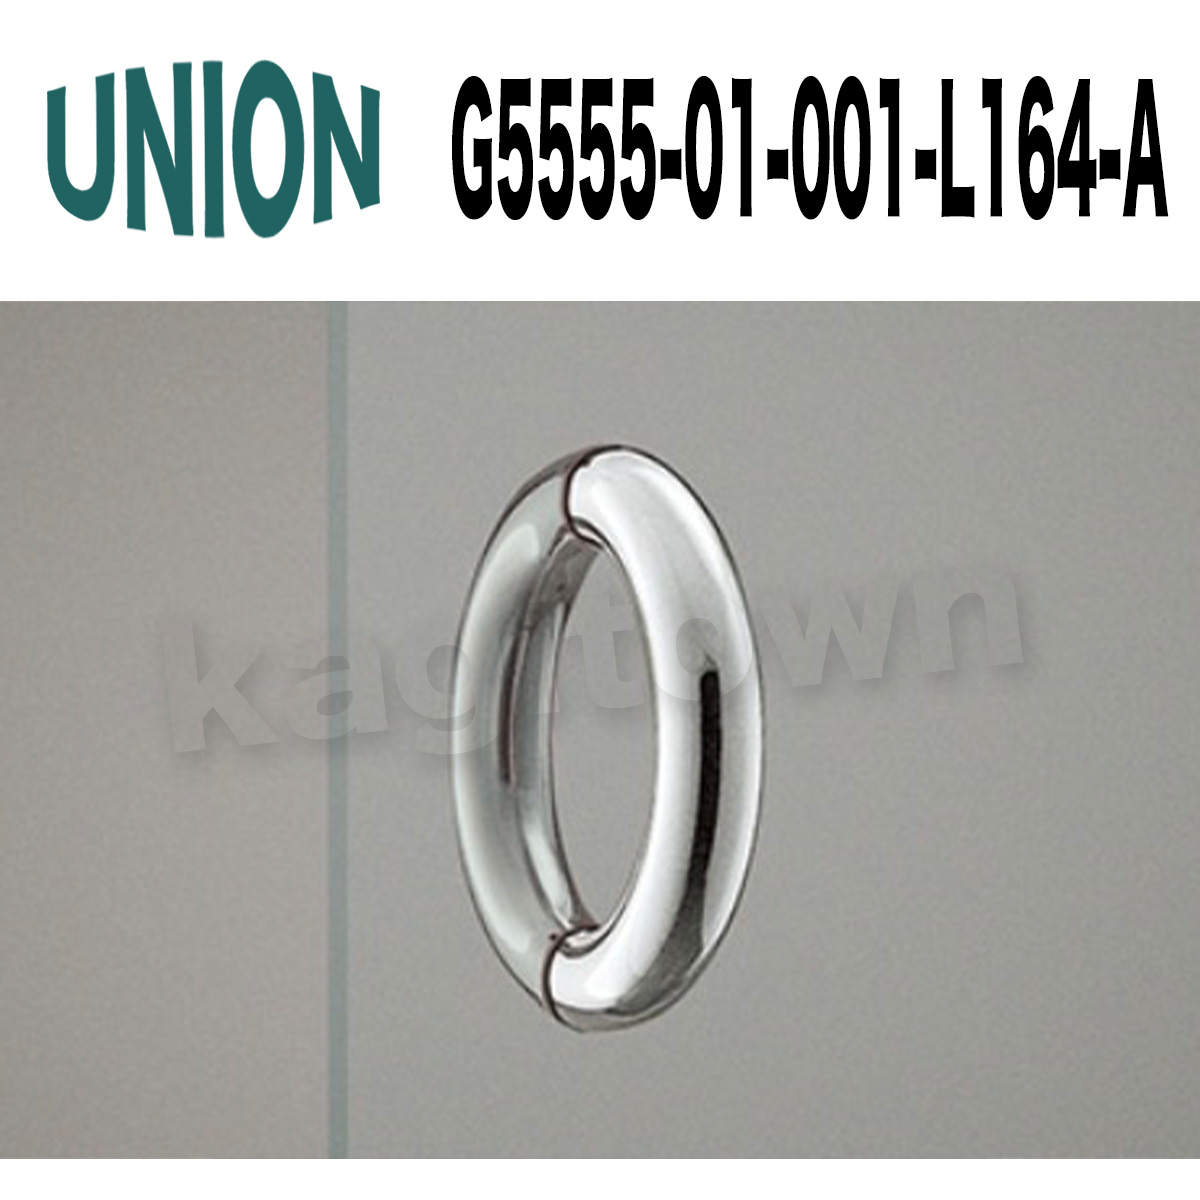 UNION【ユニオン】G5555-01-001-L164-A[ドアハンドル] 押し棒（内外）